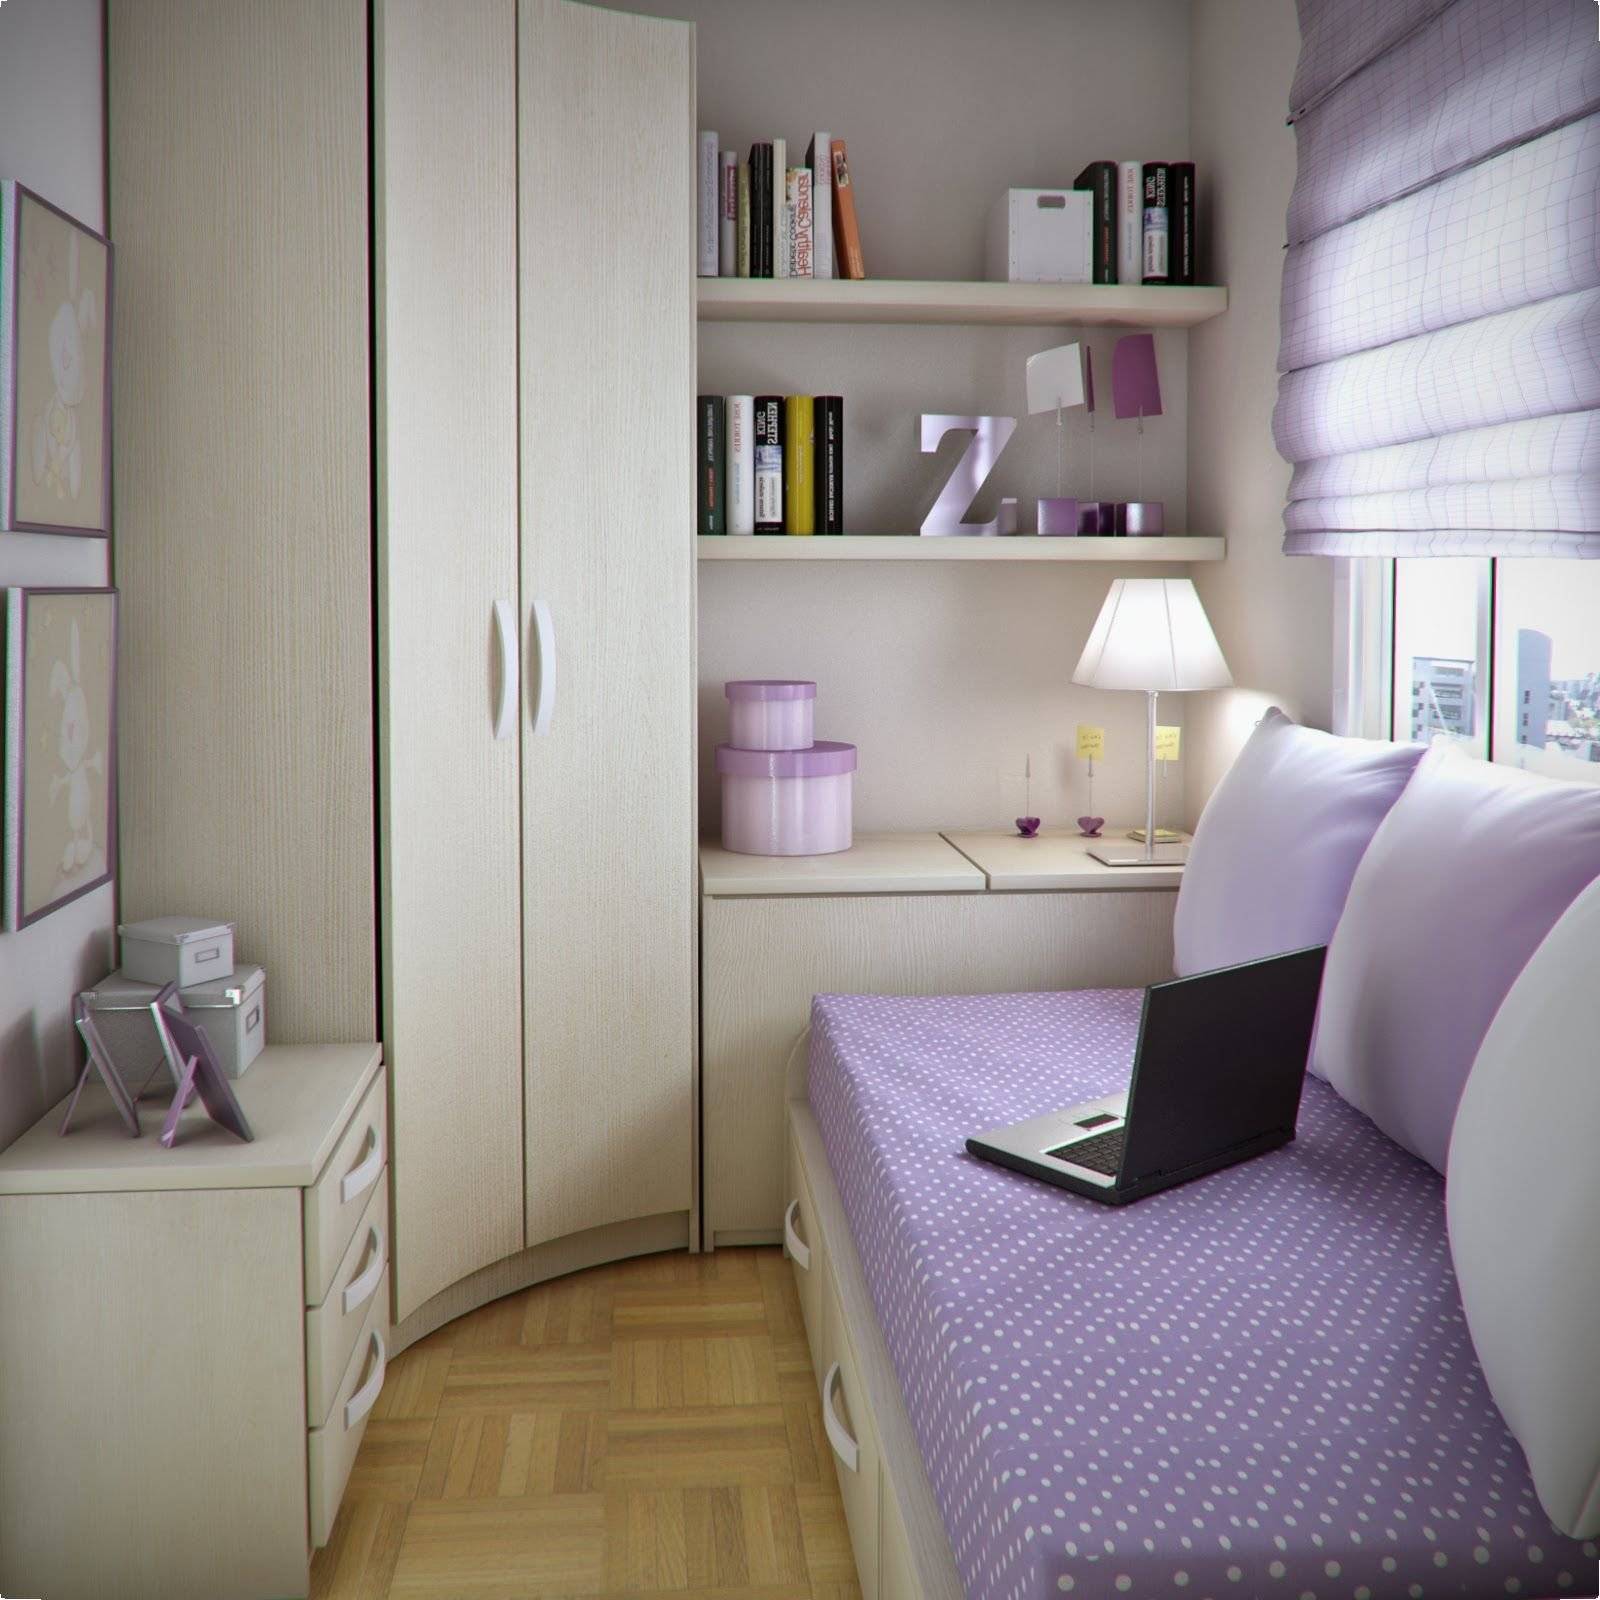 Дизайн спальни 10 кв м (фото и описание интерьера)